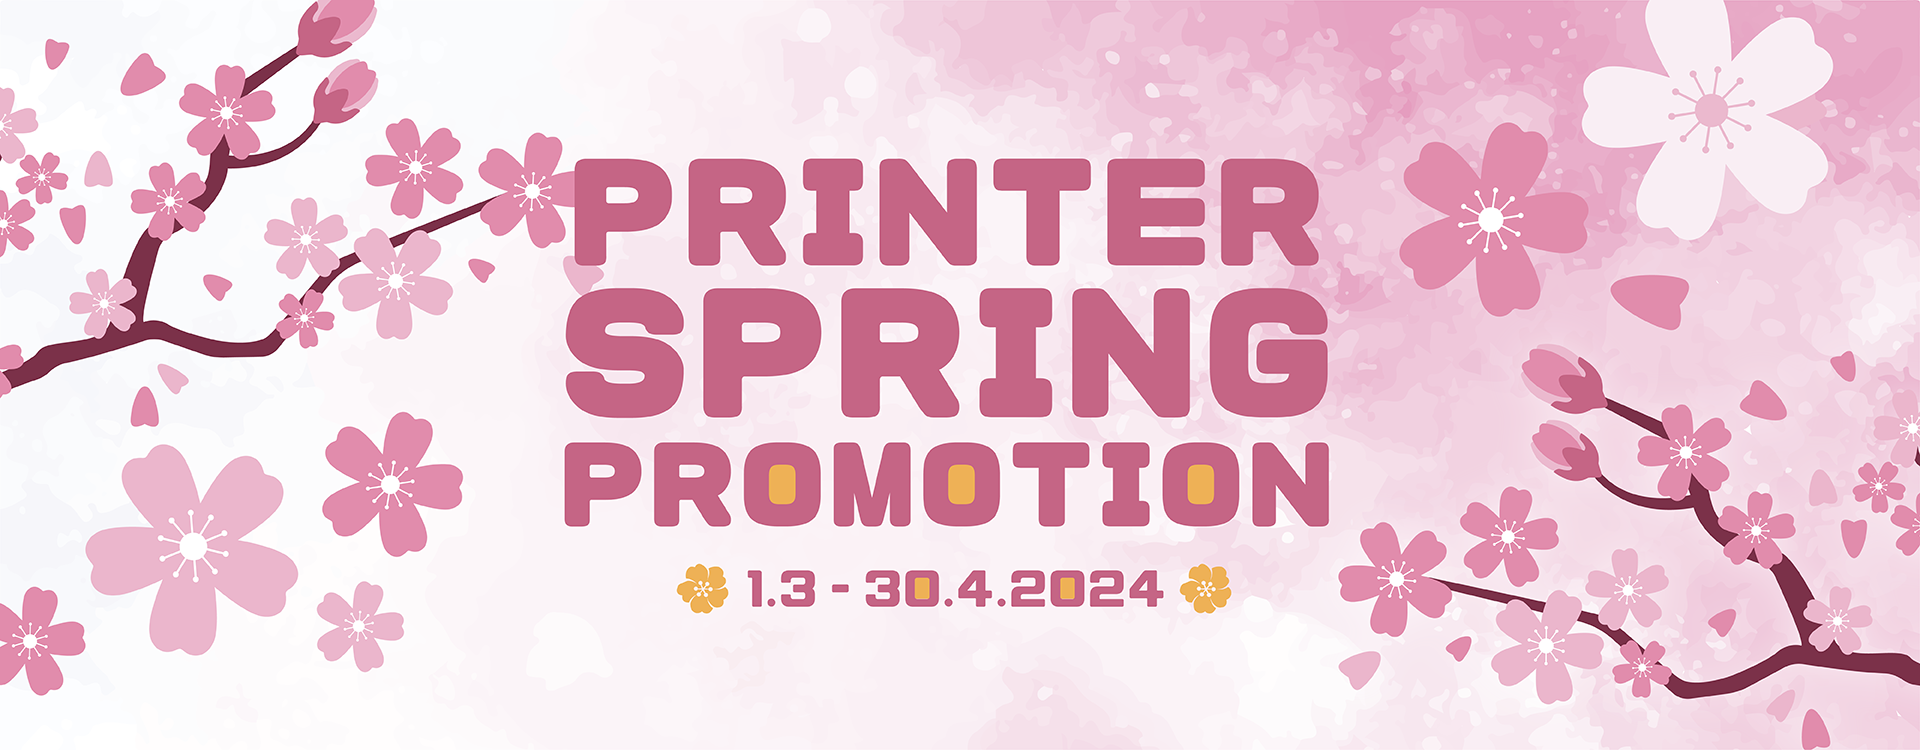 SpringPrinterPromotion-banner-02.png